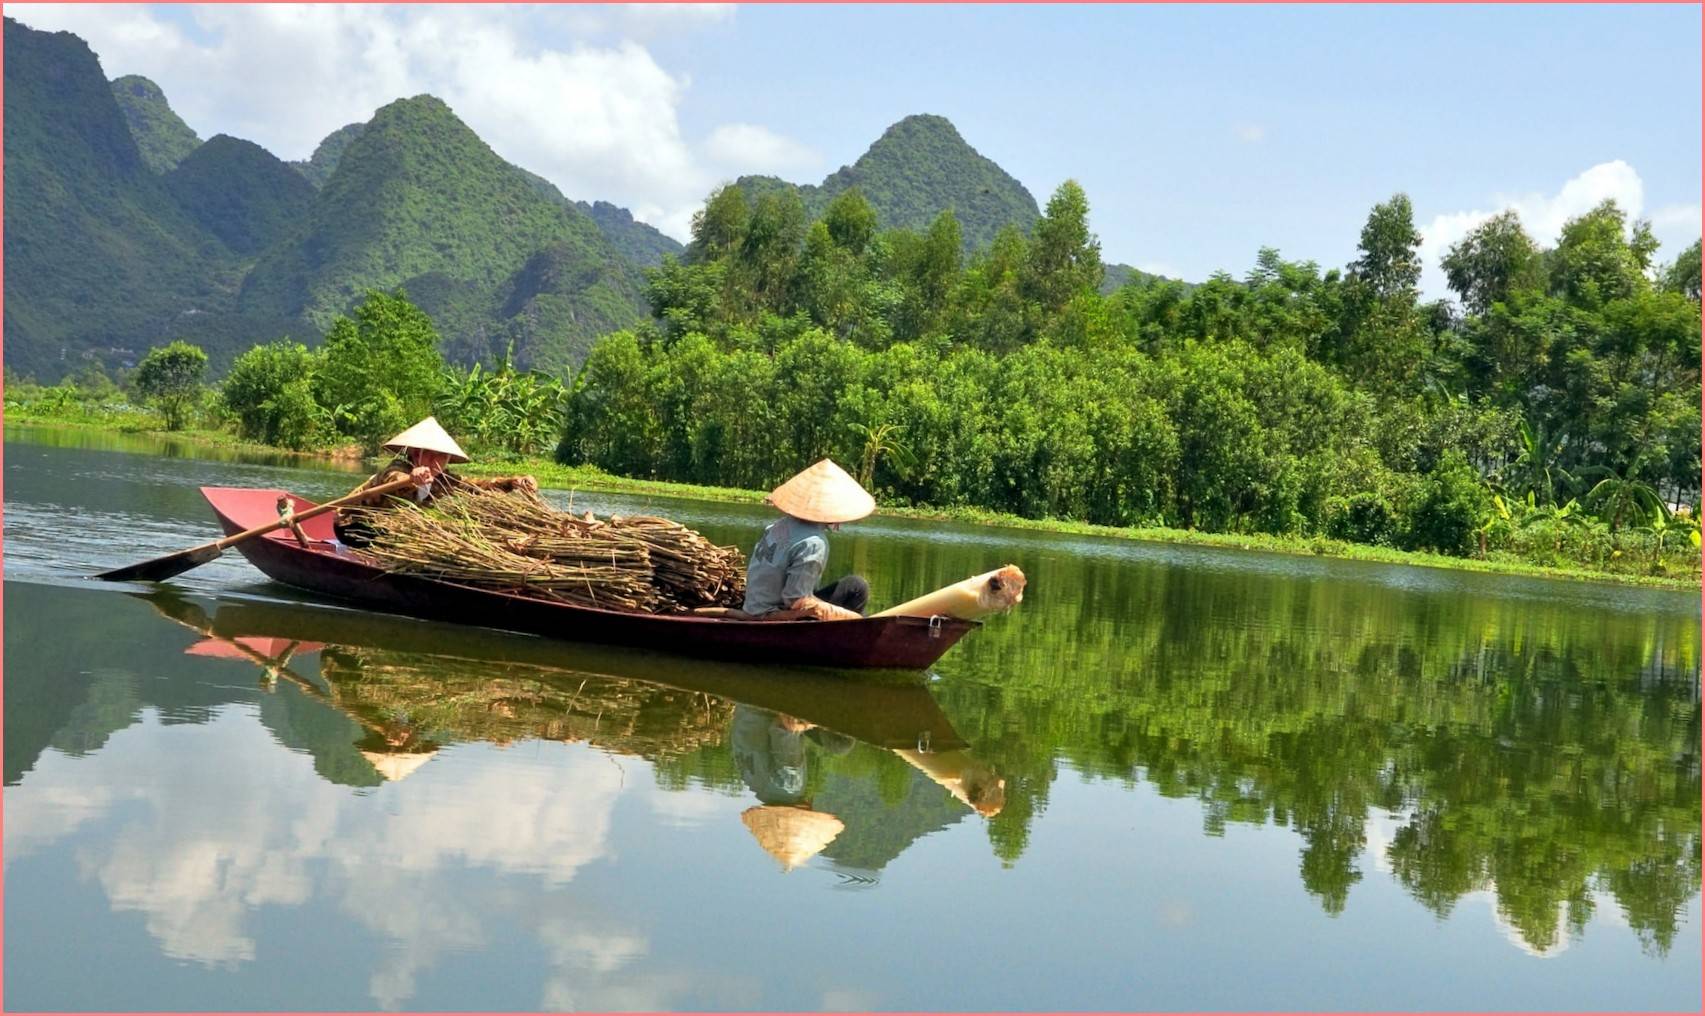 Вьетнам зимой, весной, летом, осенью - сезоны и погода в вьетнаме по месяцам, климат, tемпература